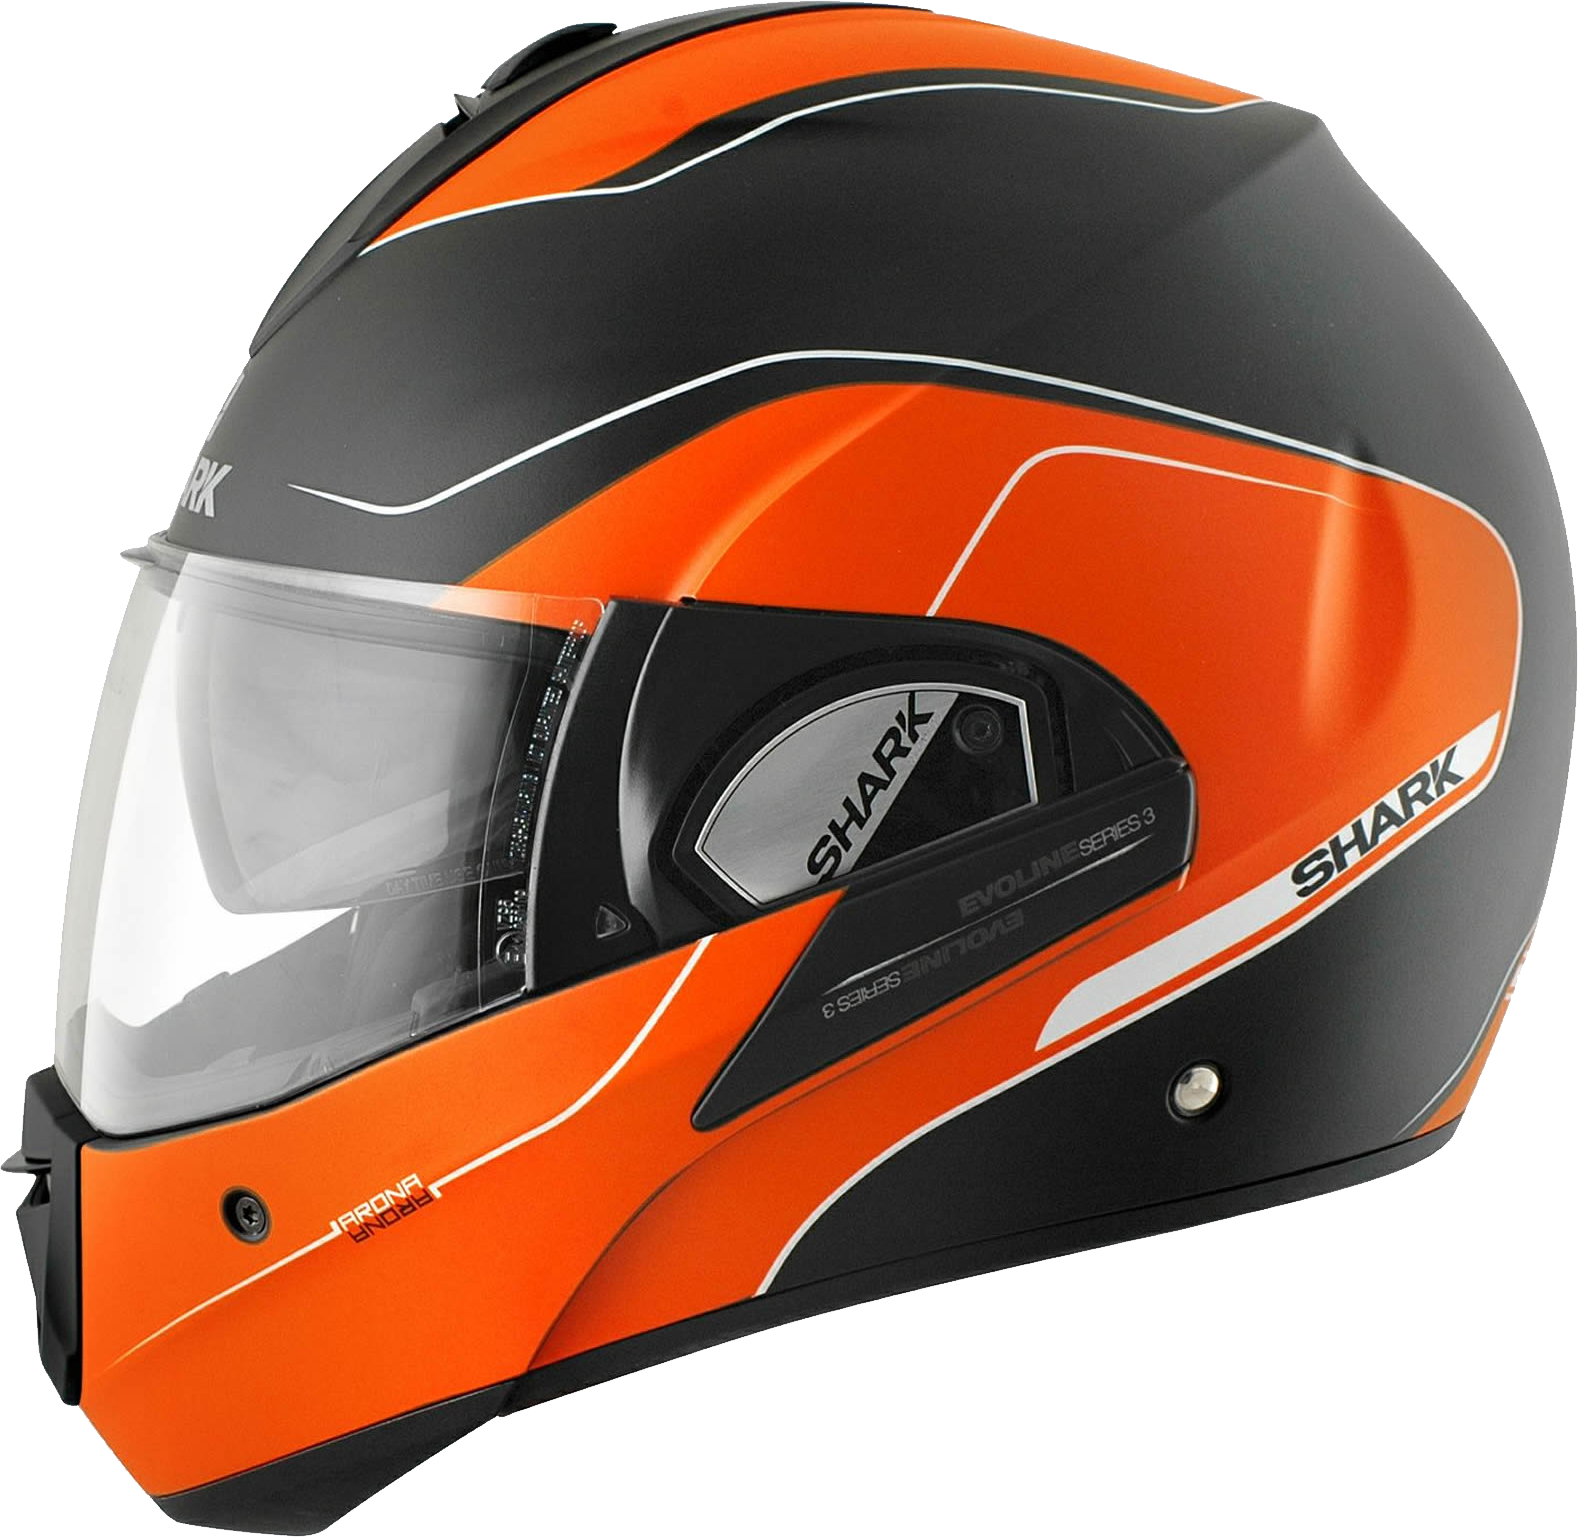 Motorcycle helmets PNG images free download, moto helmet PNG.